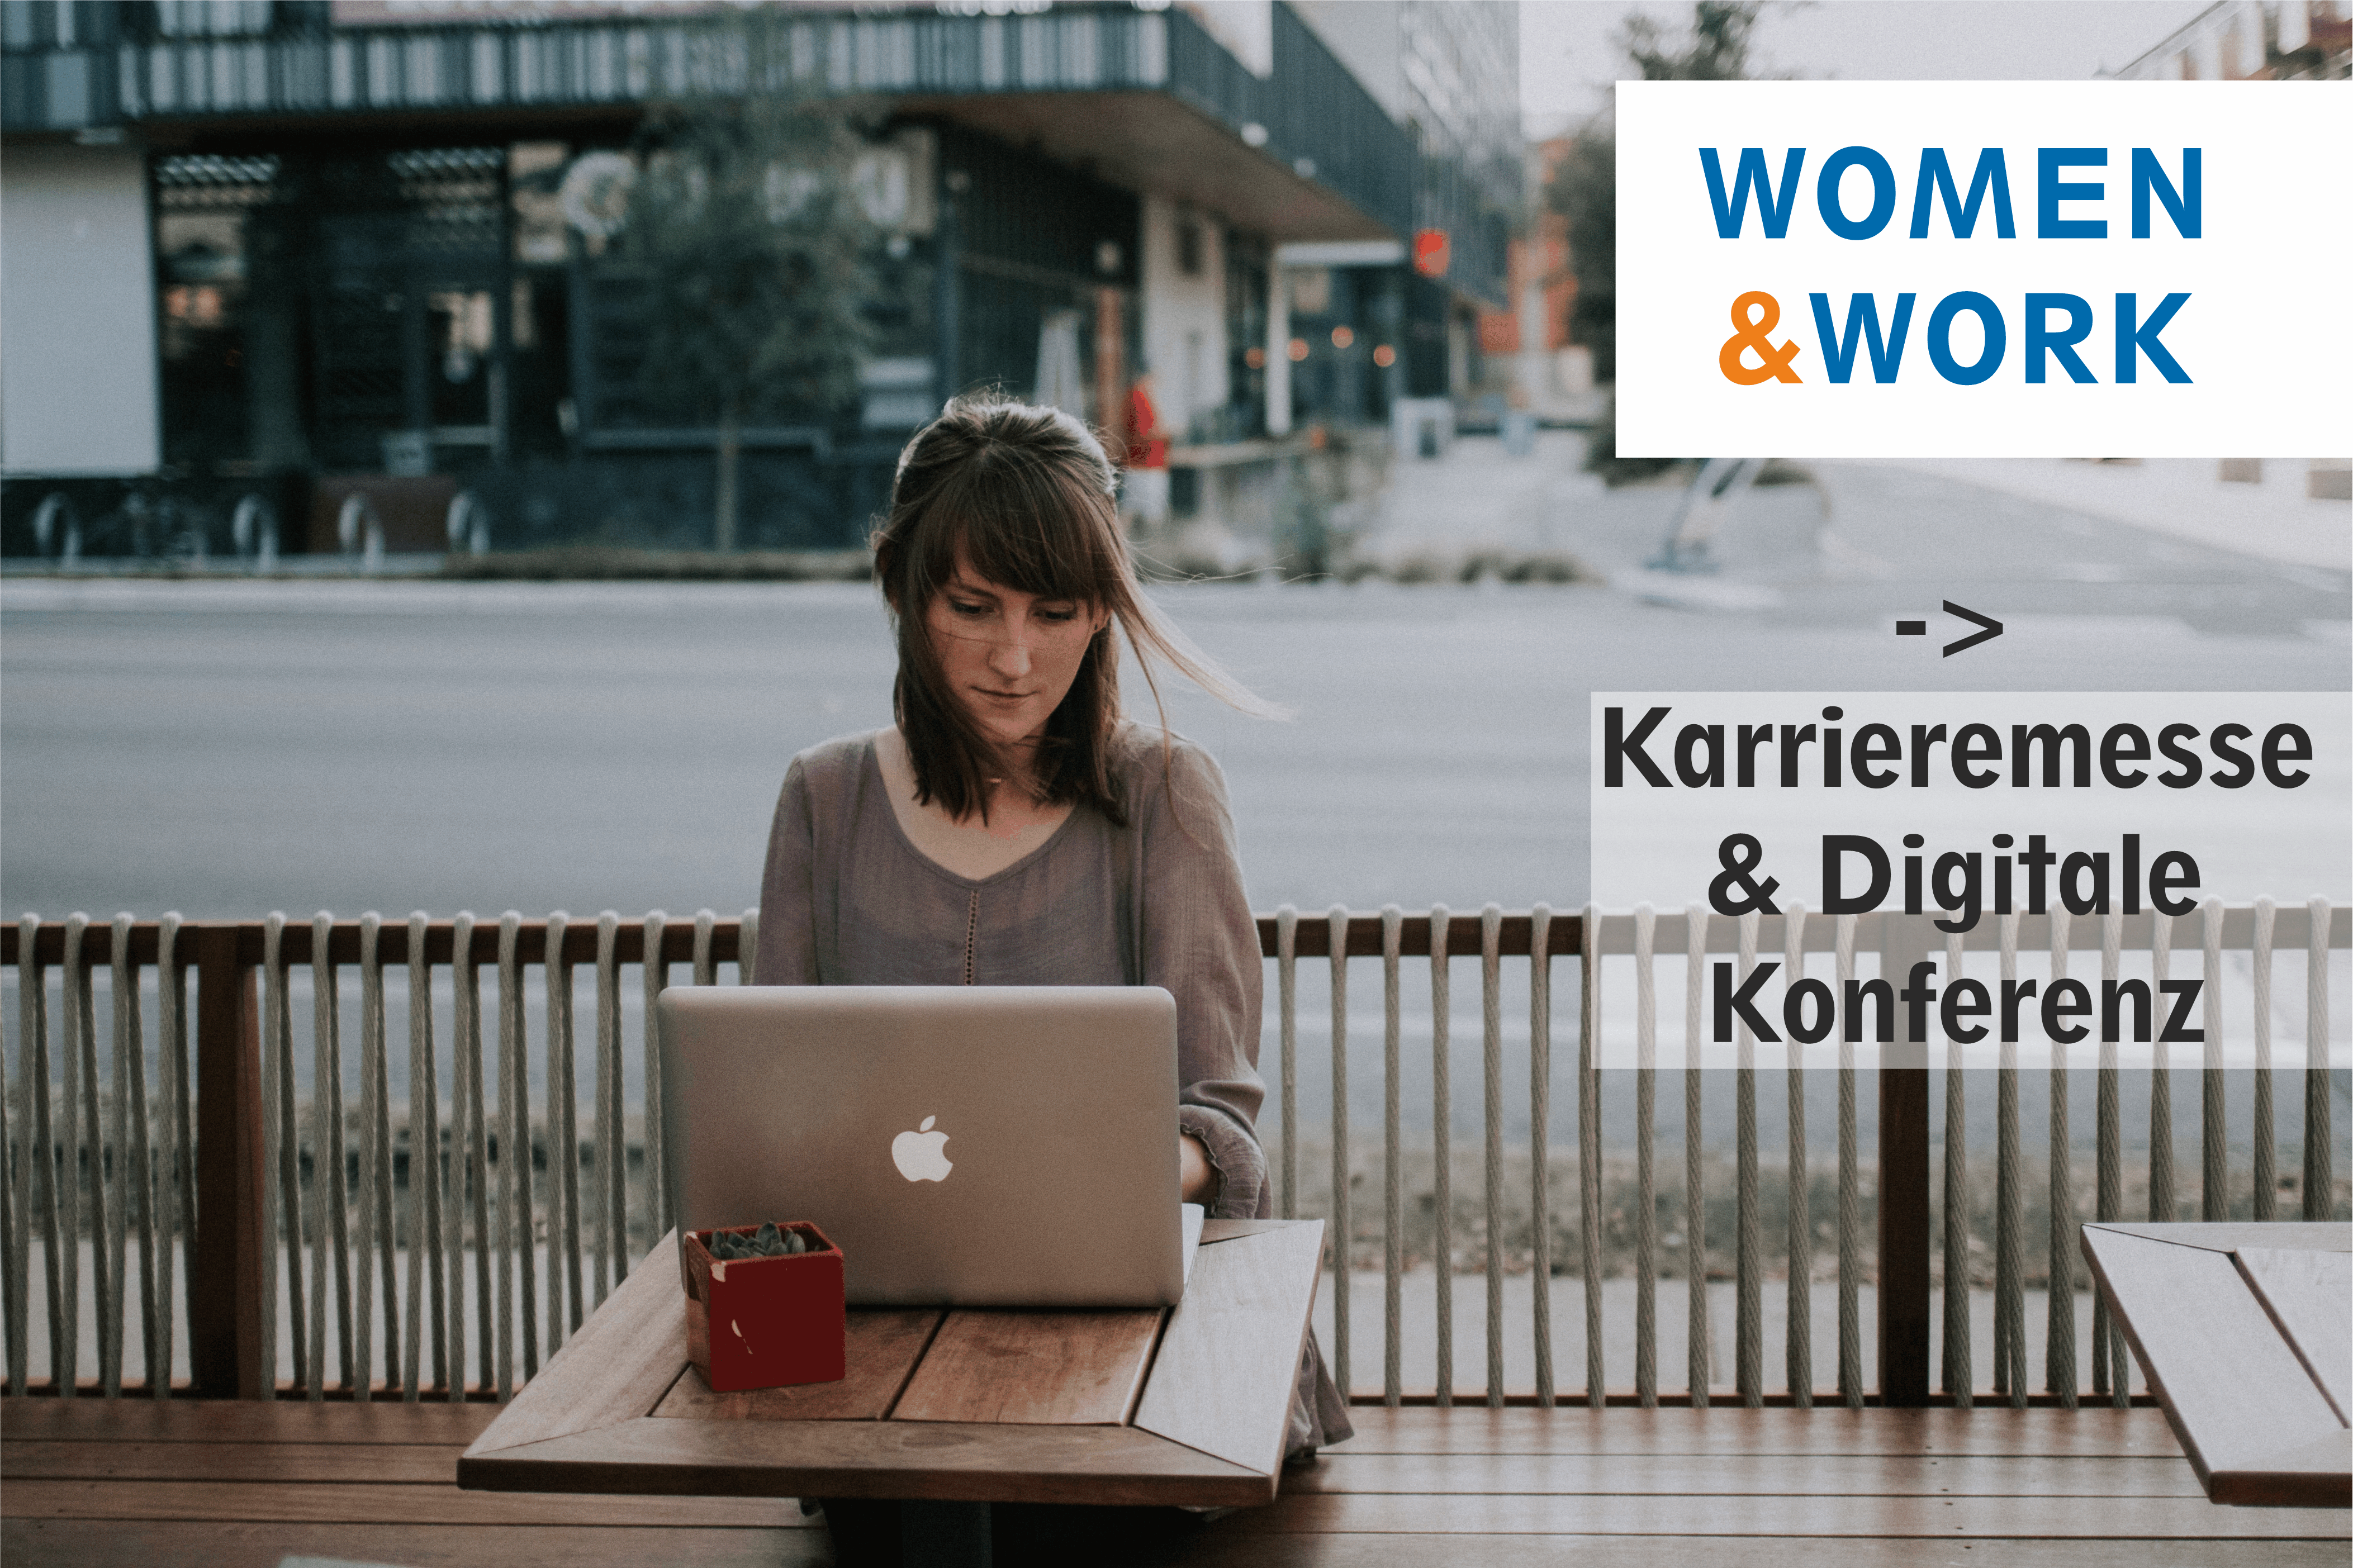 Women&Work: Digitale Kariere-Messe, Konferenzen & Webinare